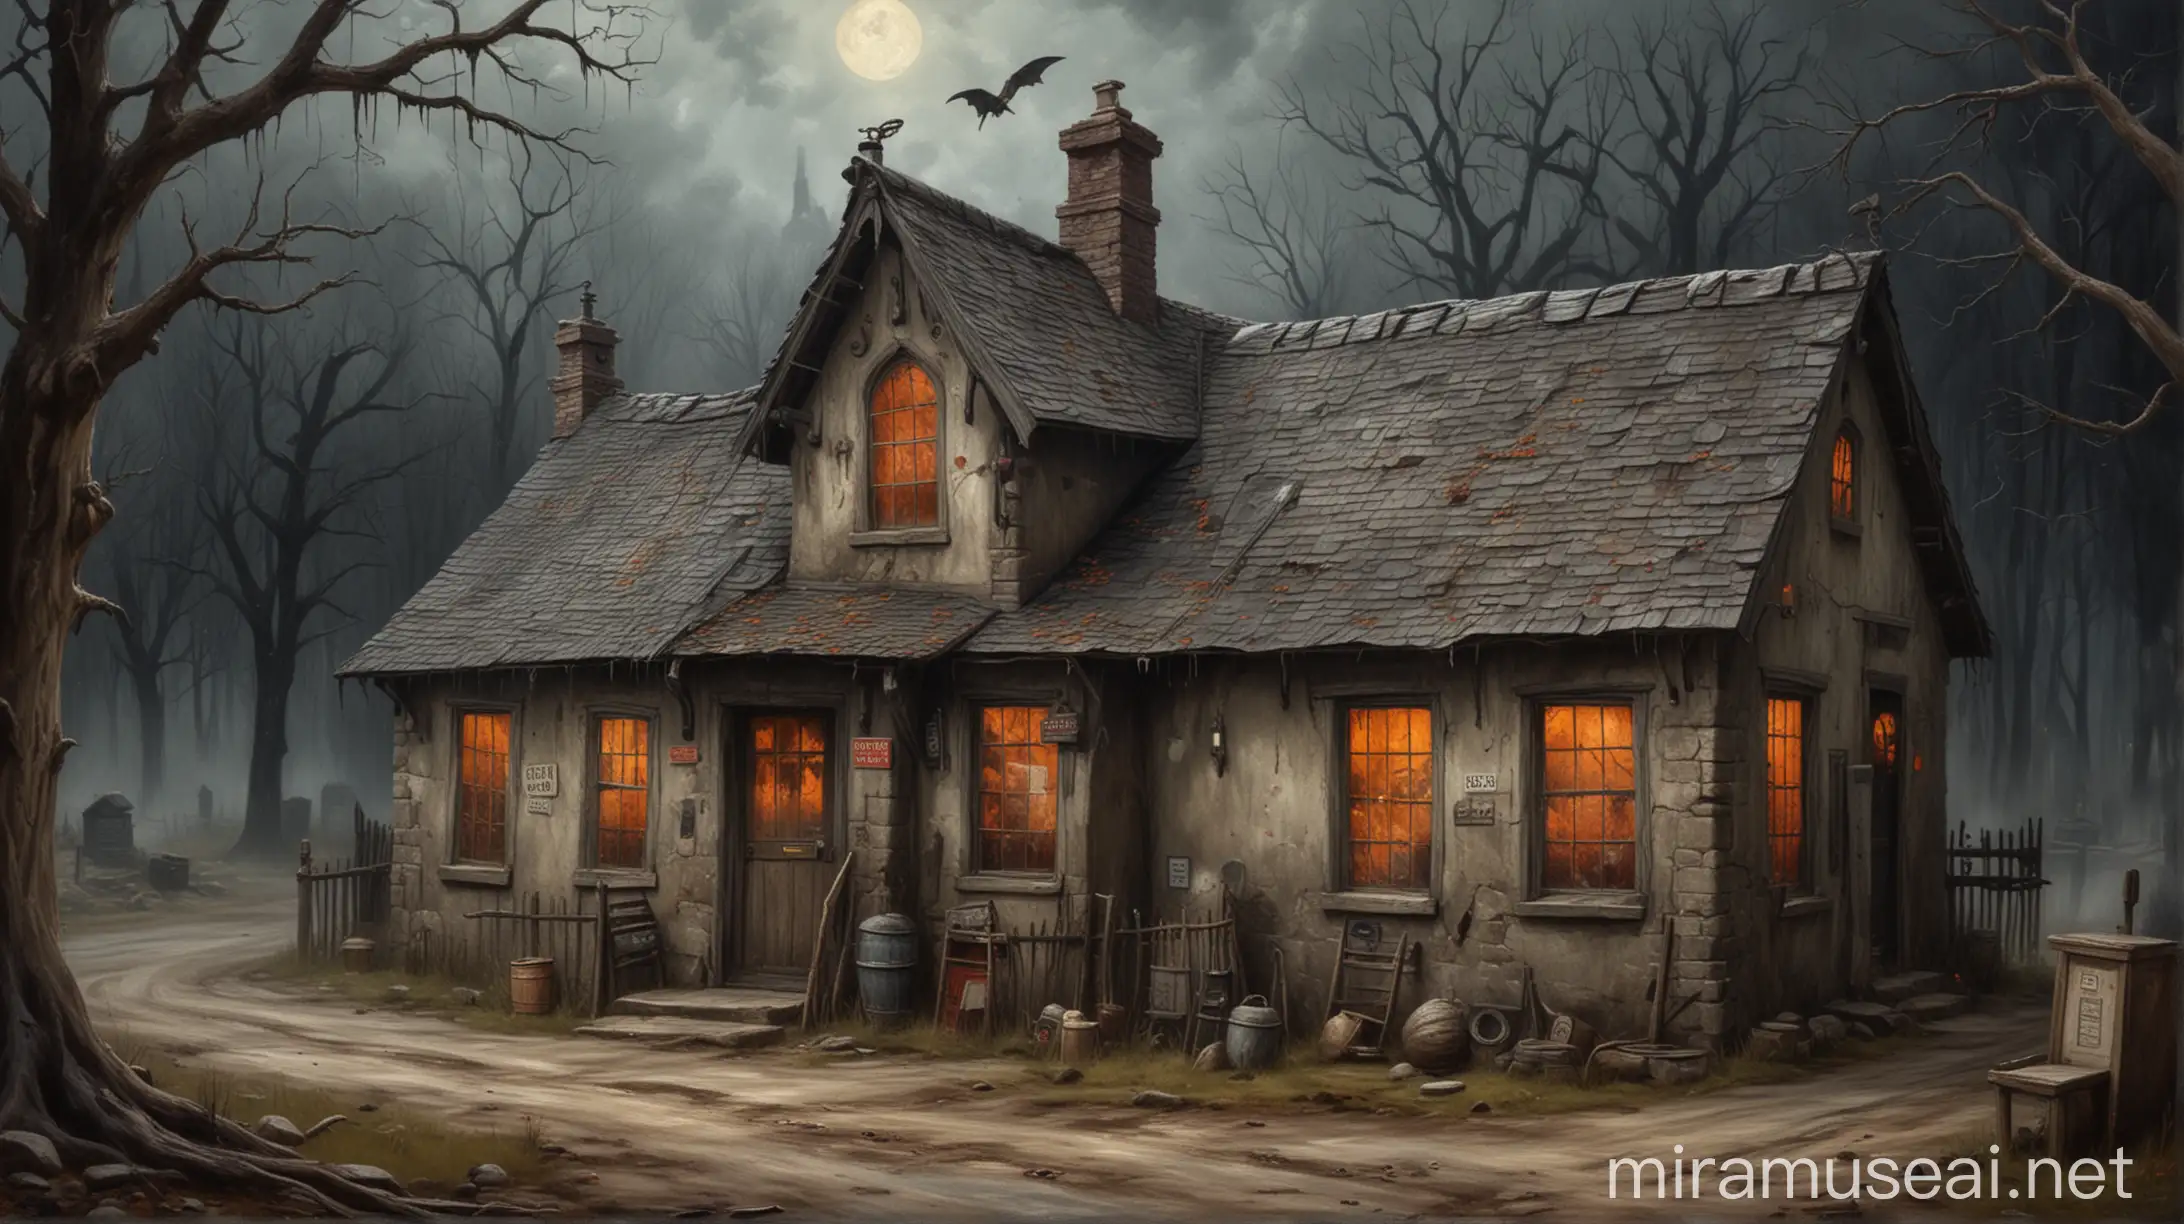 Eerie Village Post Office in Oil Paintings